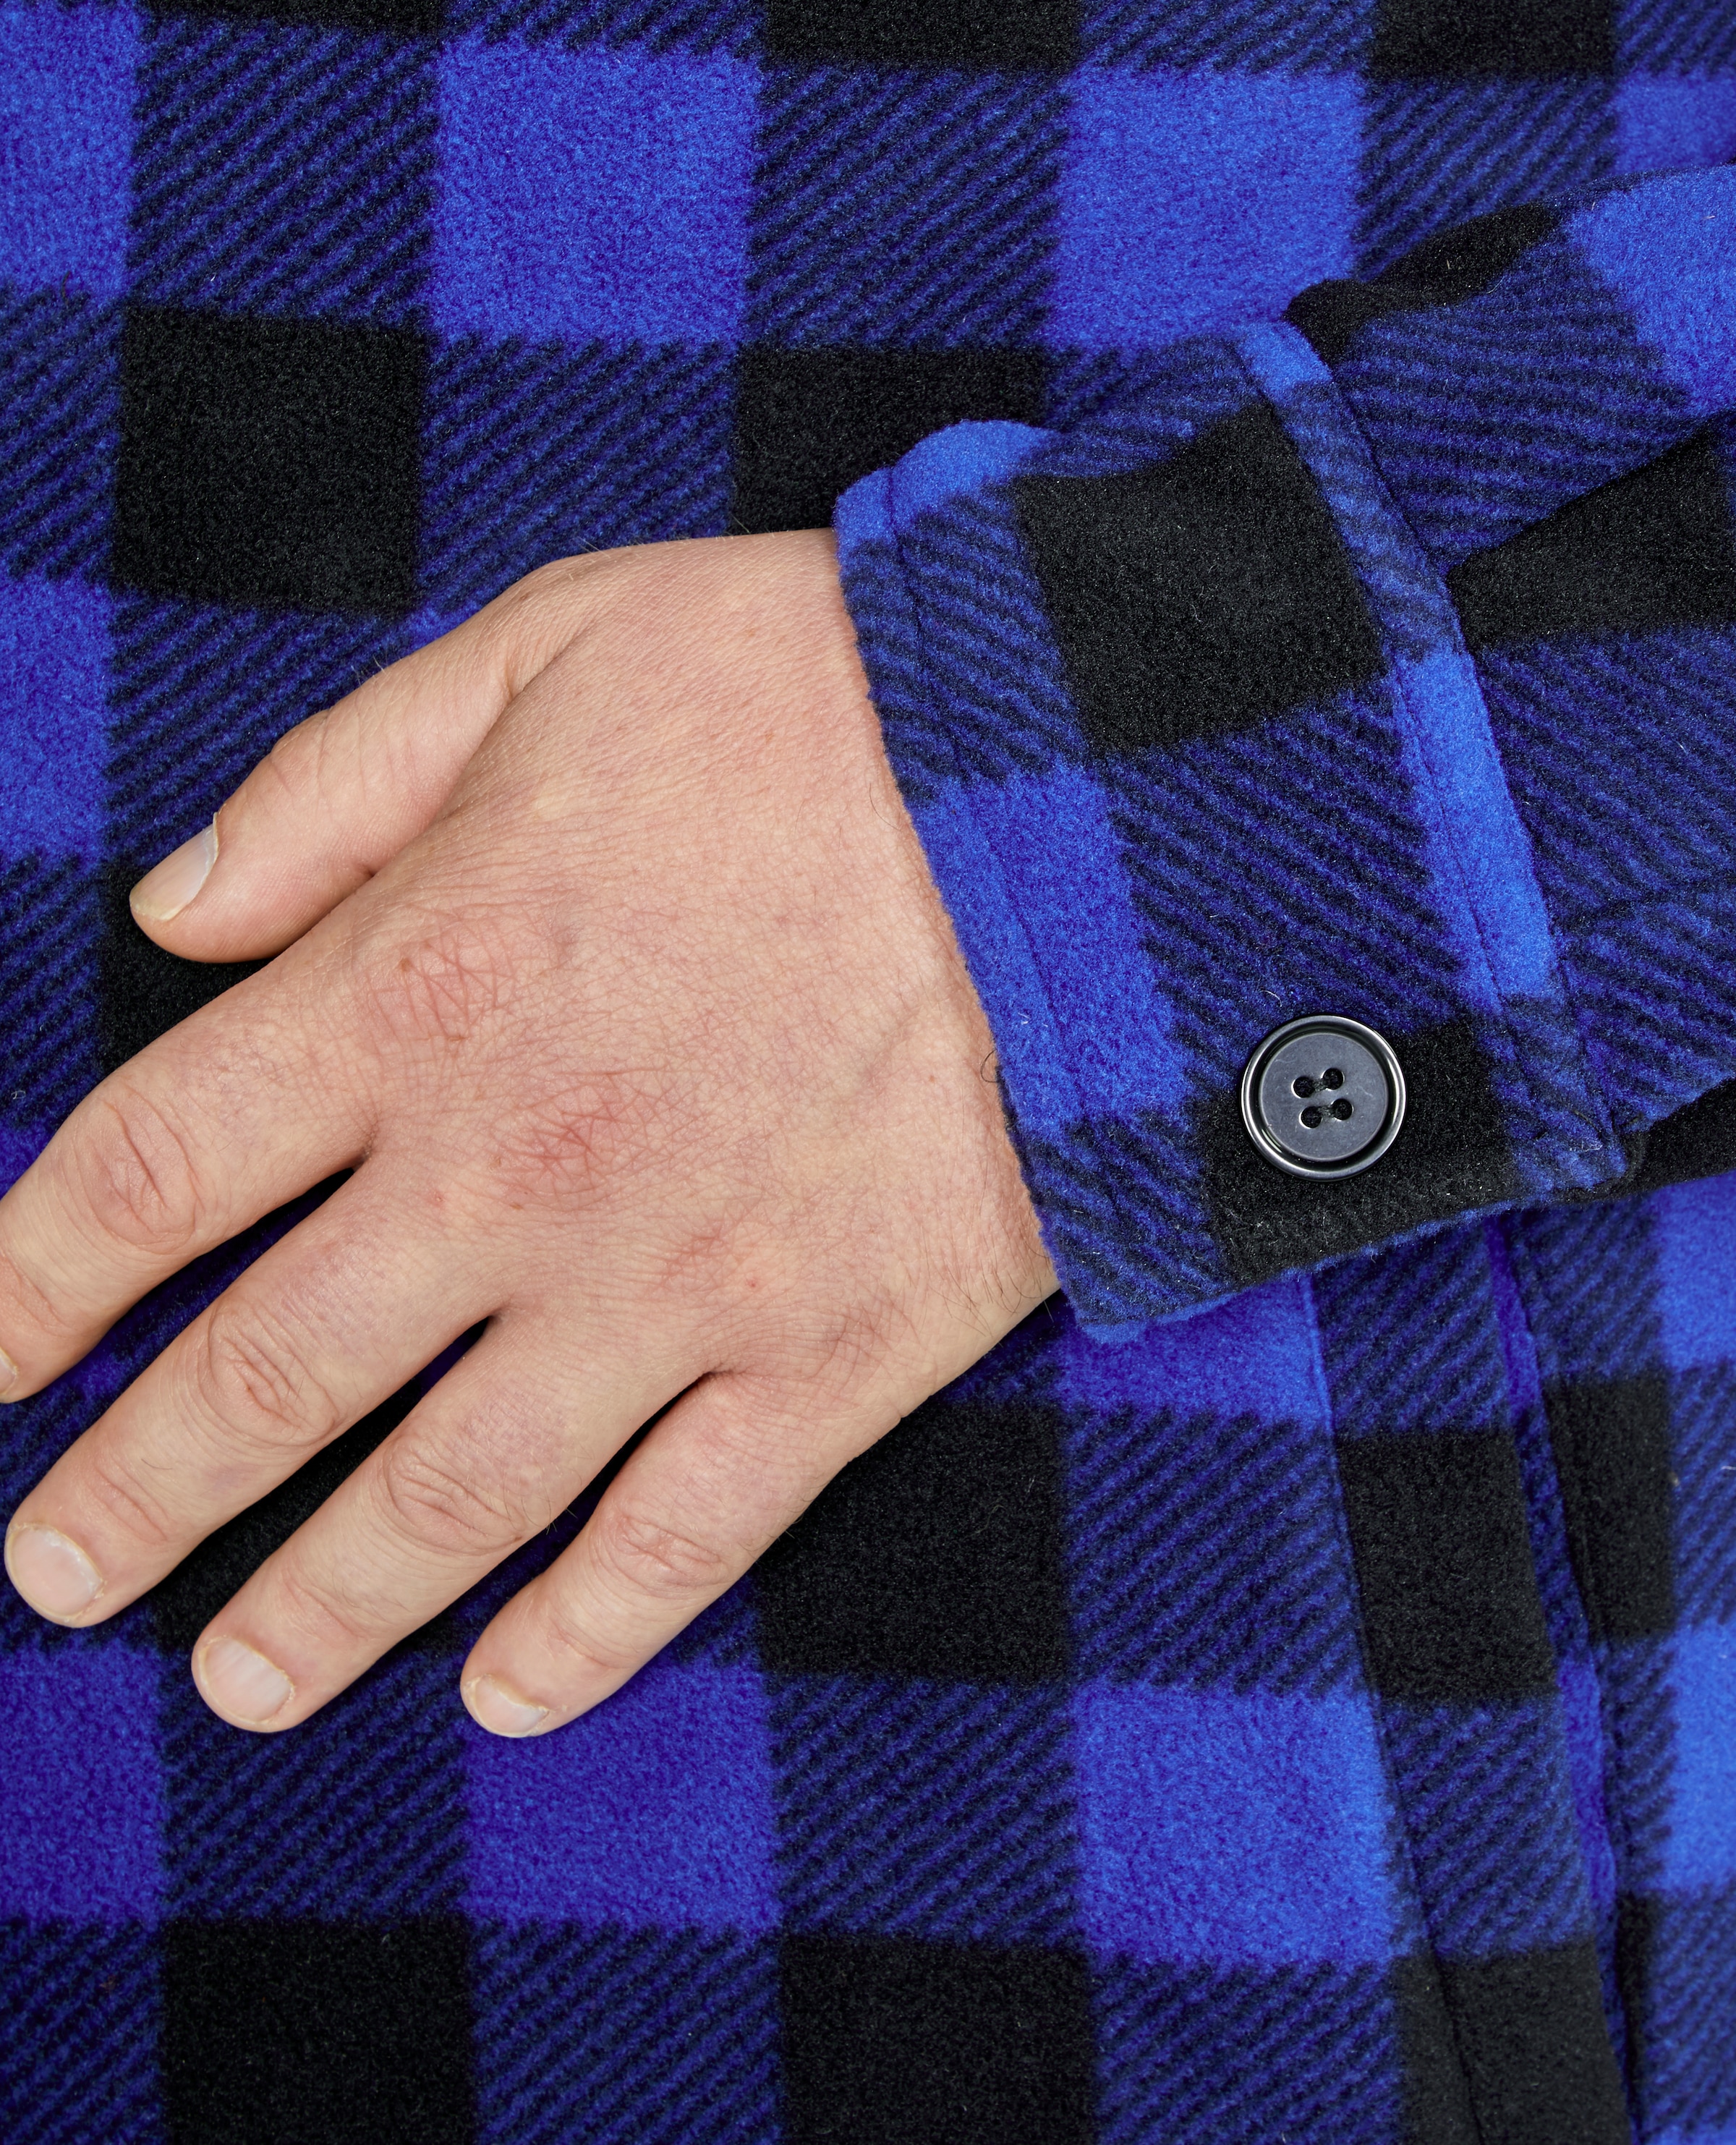 Northern Country Flanellhemd, (als Jacke offen oder Hemd zugeknöpft zu  tragen), warm gefüttert, mit 5 Taschen, mit verlängertem Rücken,  Flanellstoff ▷ bestellen | BAUR